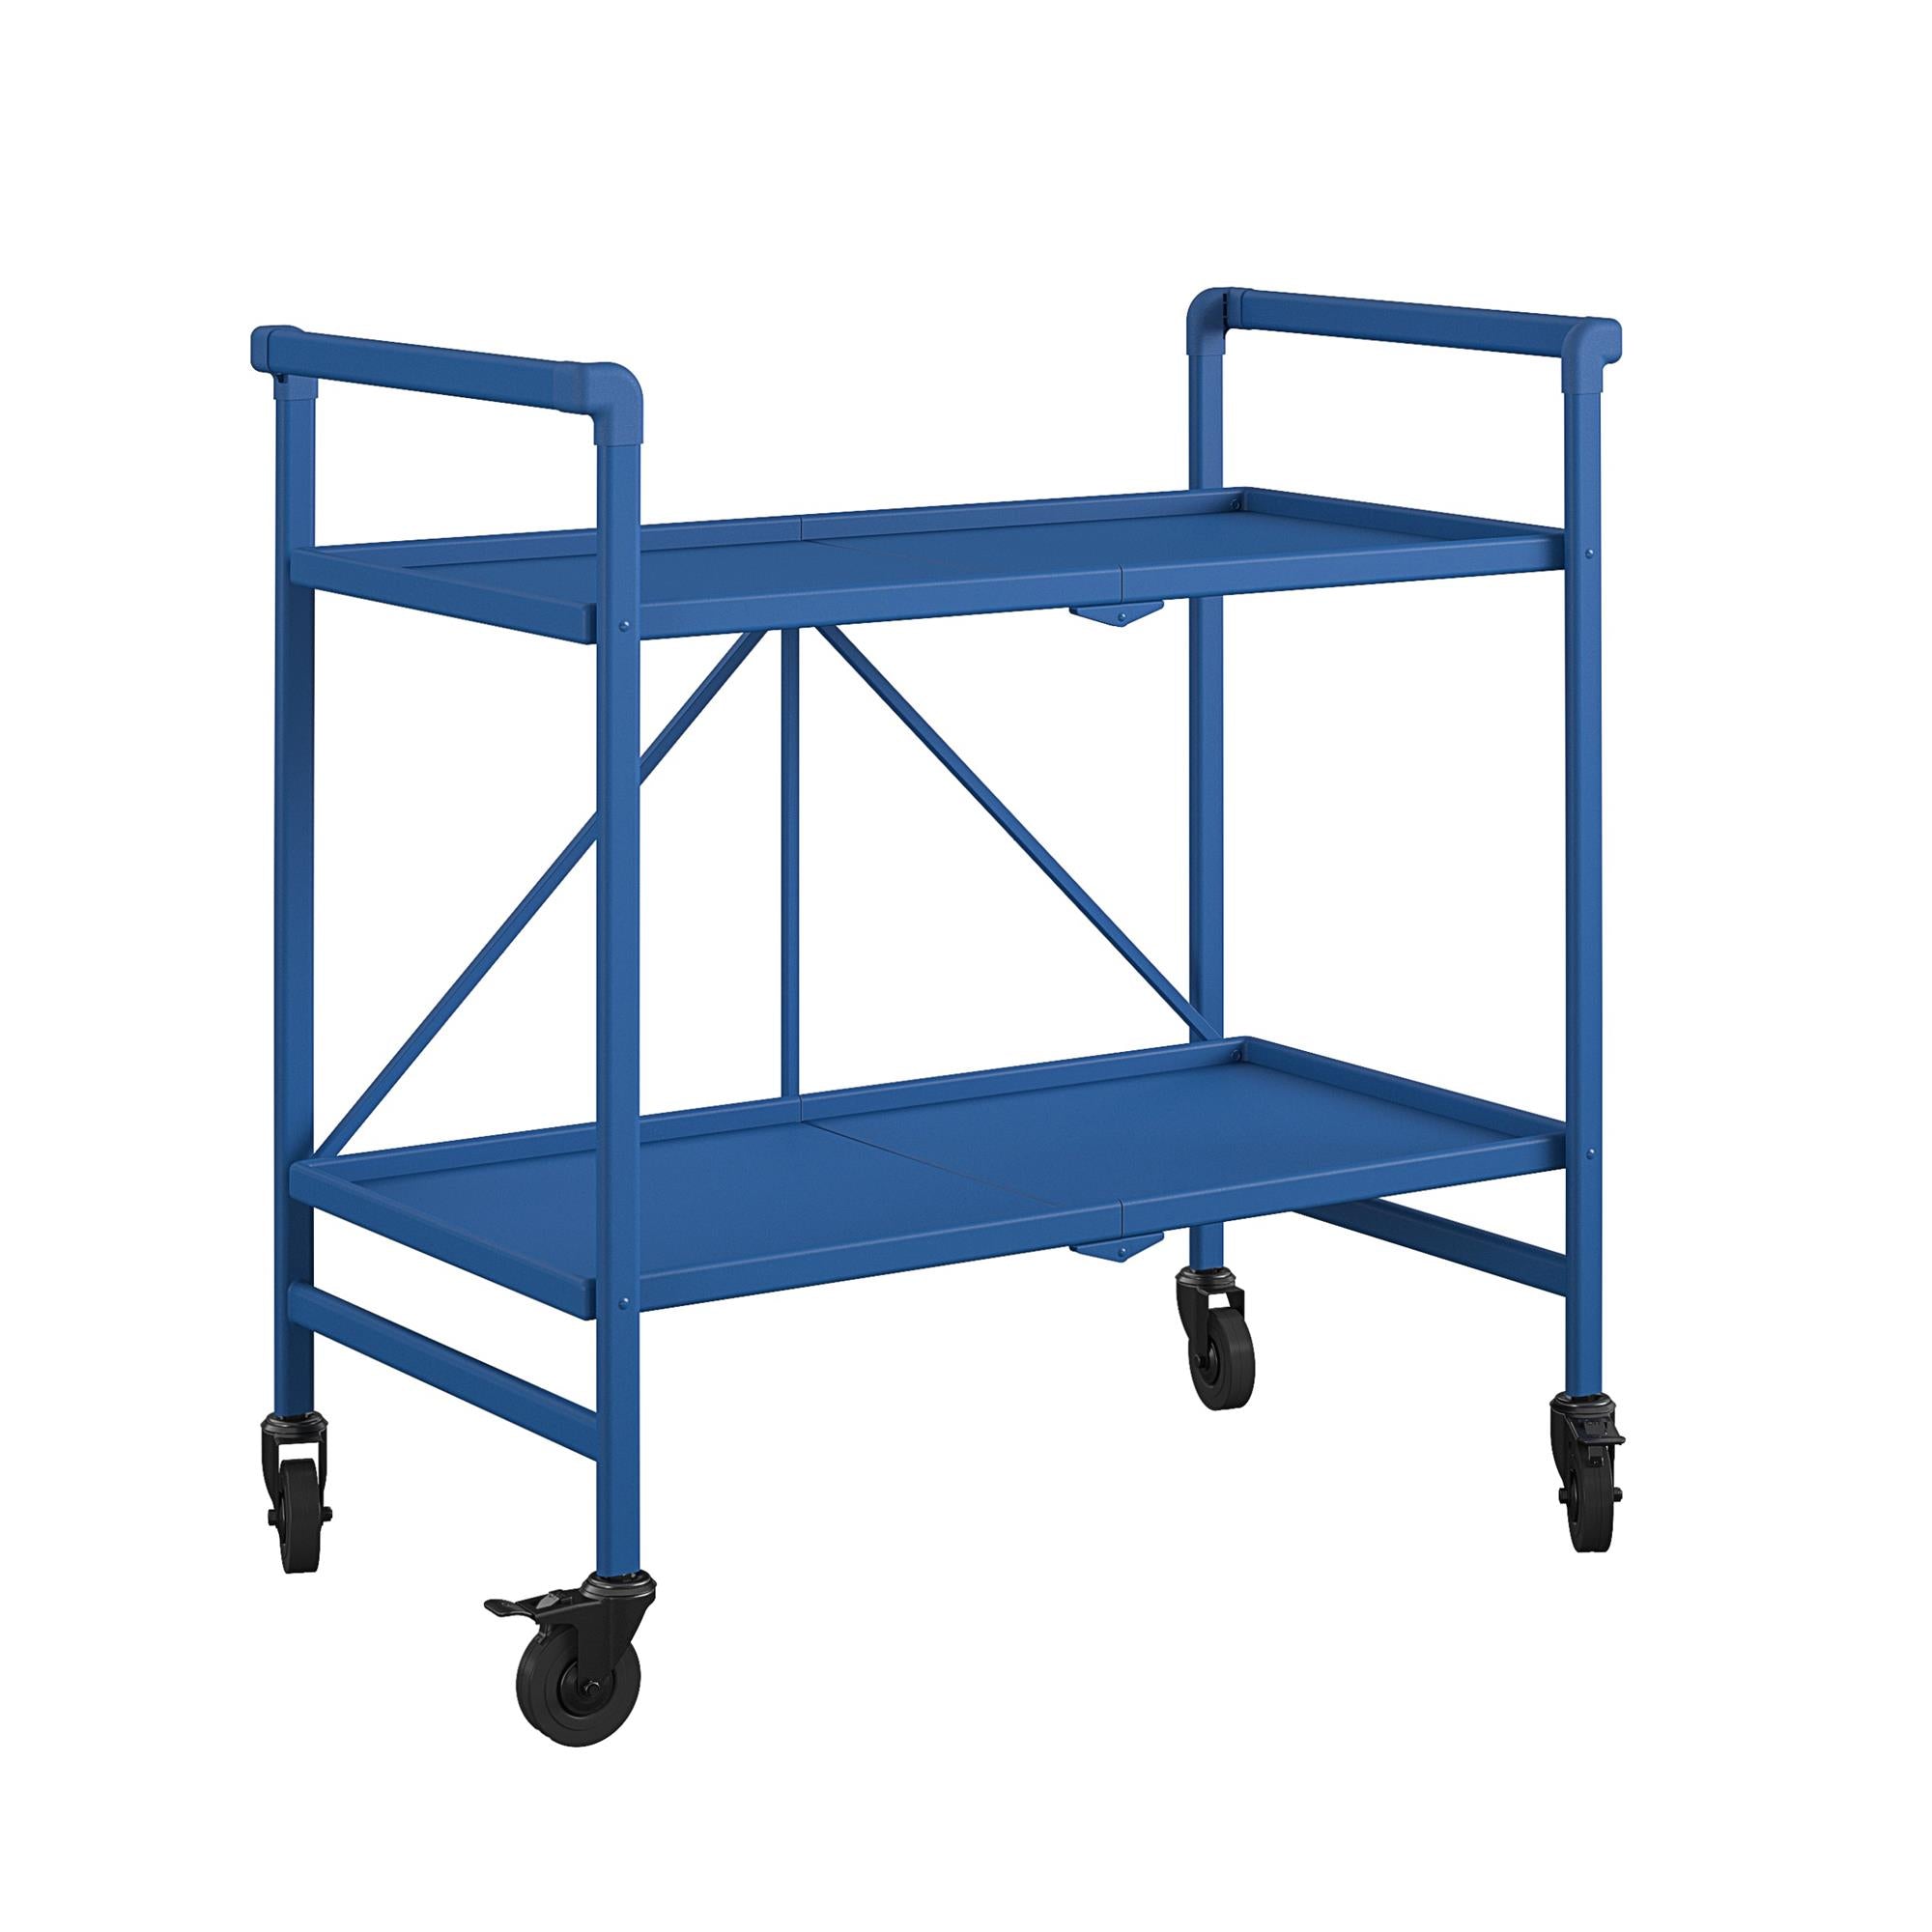 Outdoor Folding Bar Cart